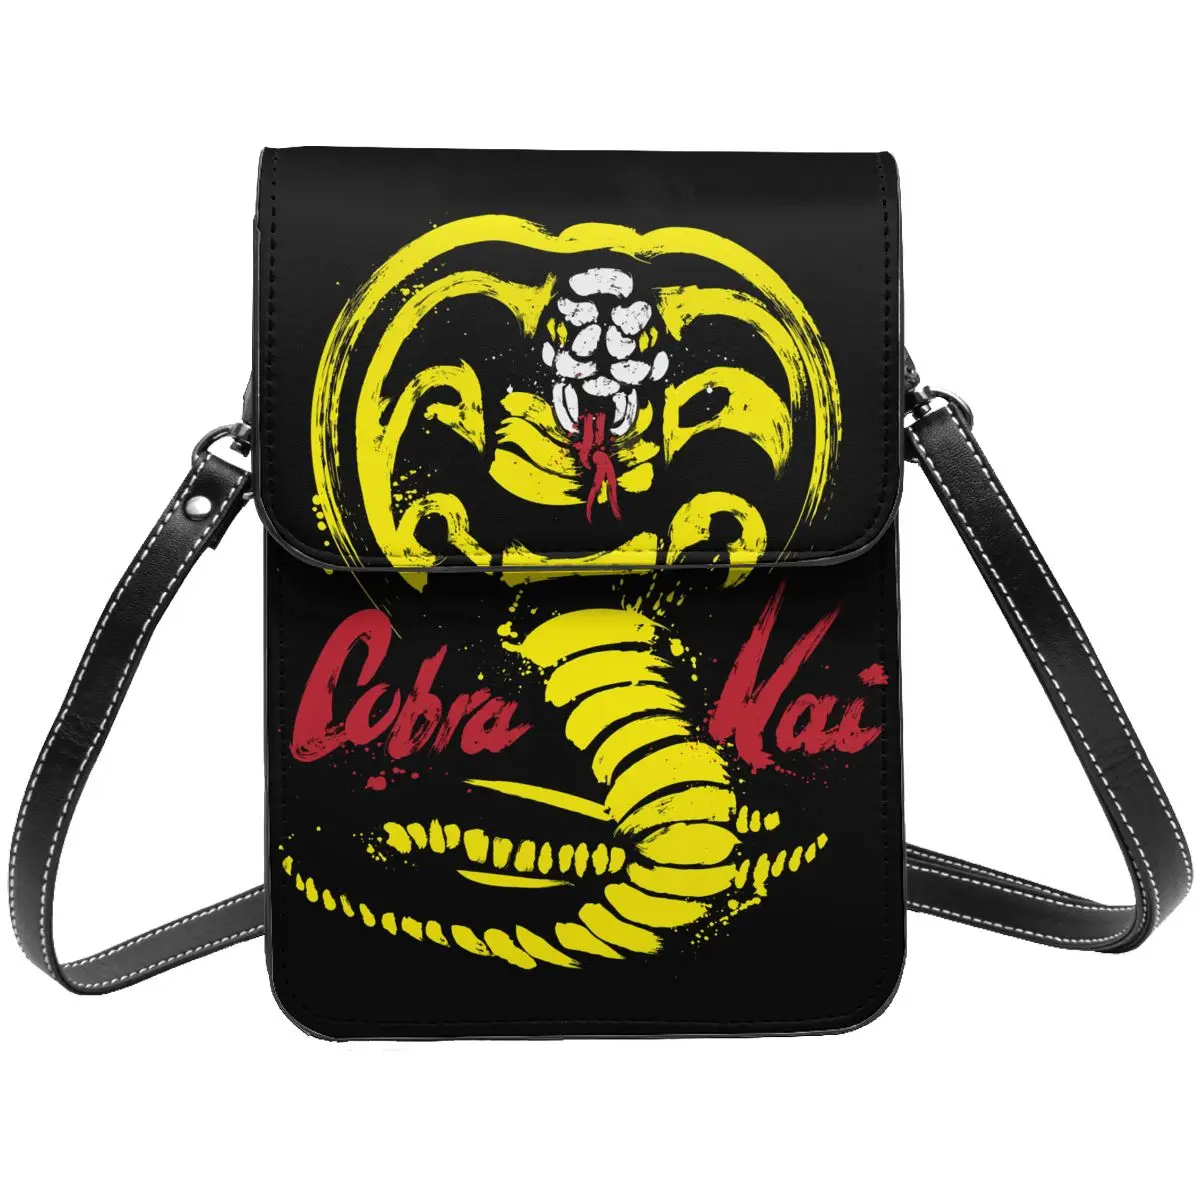 

Кошелек-Кроссбоди Cobra Kai, сумка для сотового телефона, сумка на плечо, кошелек для сотового телефона с регулируемым ремешком